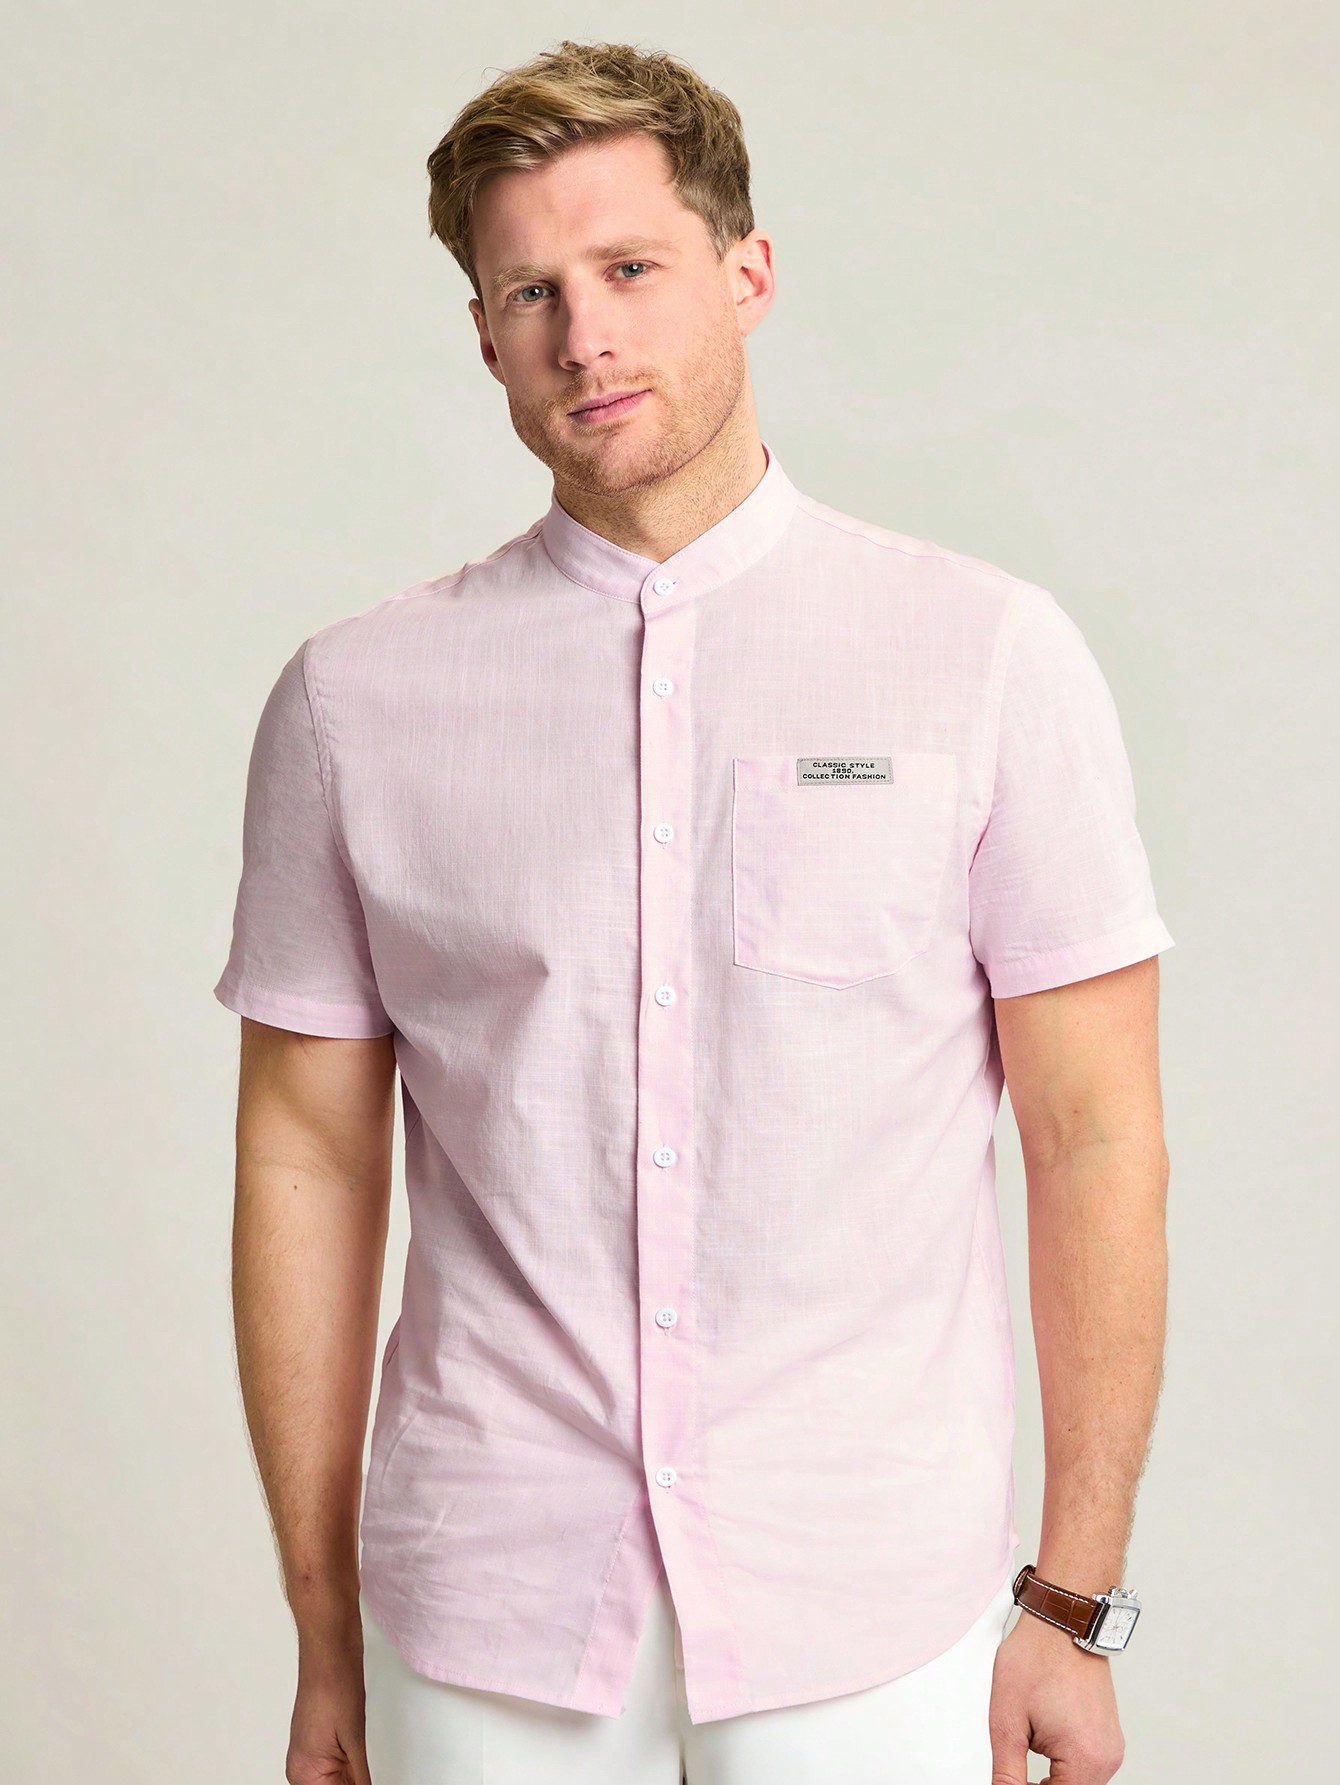 Мужская тканая рубашка с короткими рукавами Manfinity Homme для отдыха с карманом и нашивкой с надписью, розовый